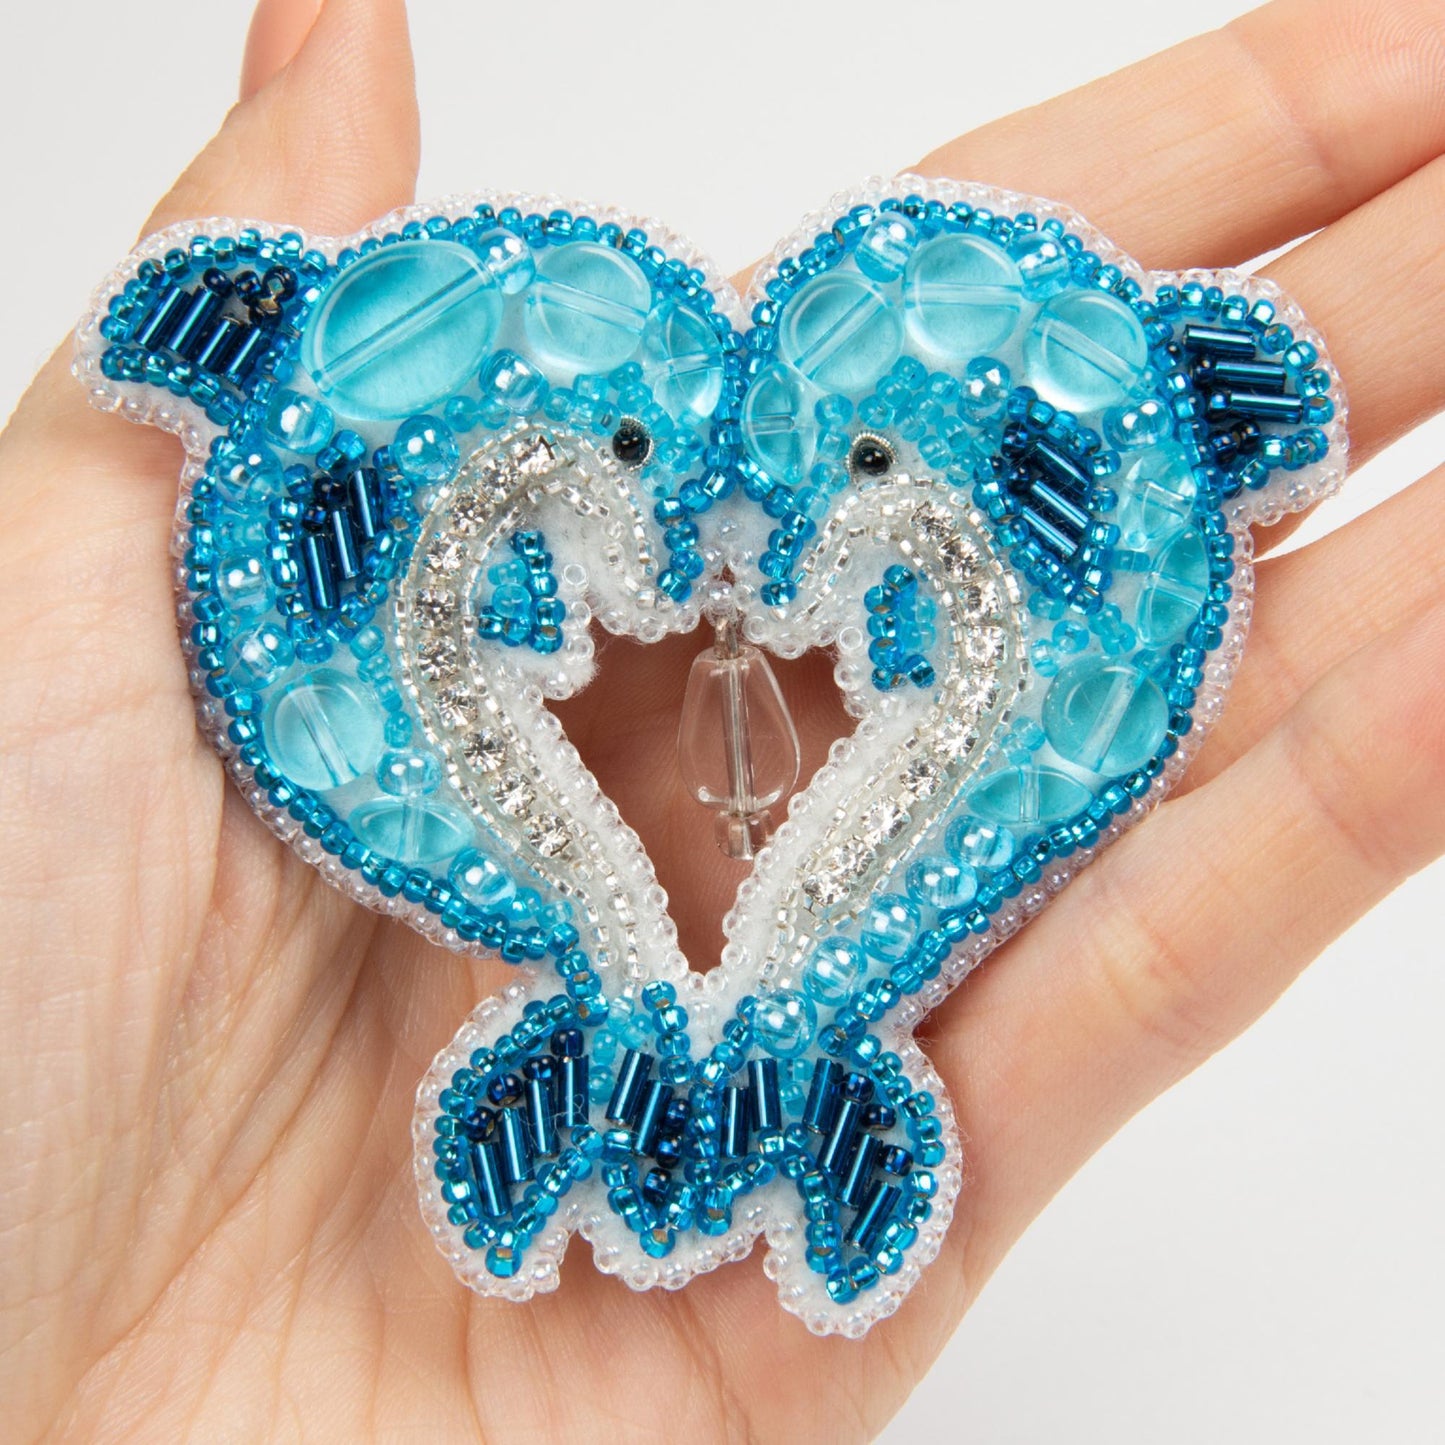 BP-280 Kit de abalorios para crear broche Crystal Art "Dolphins"